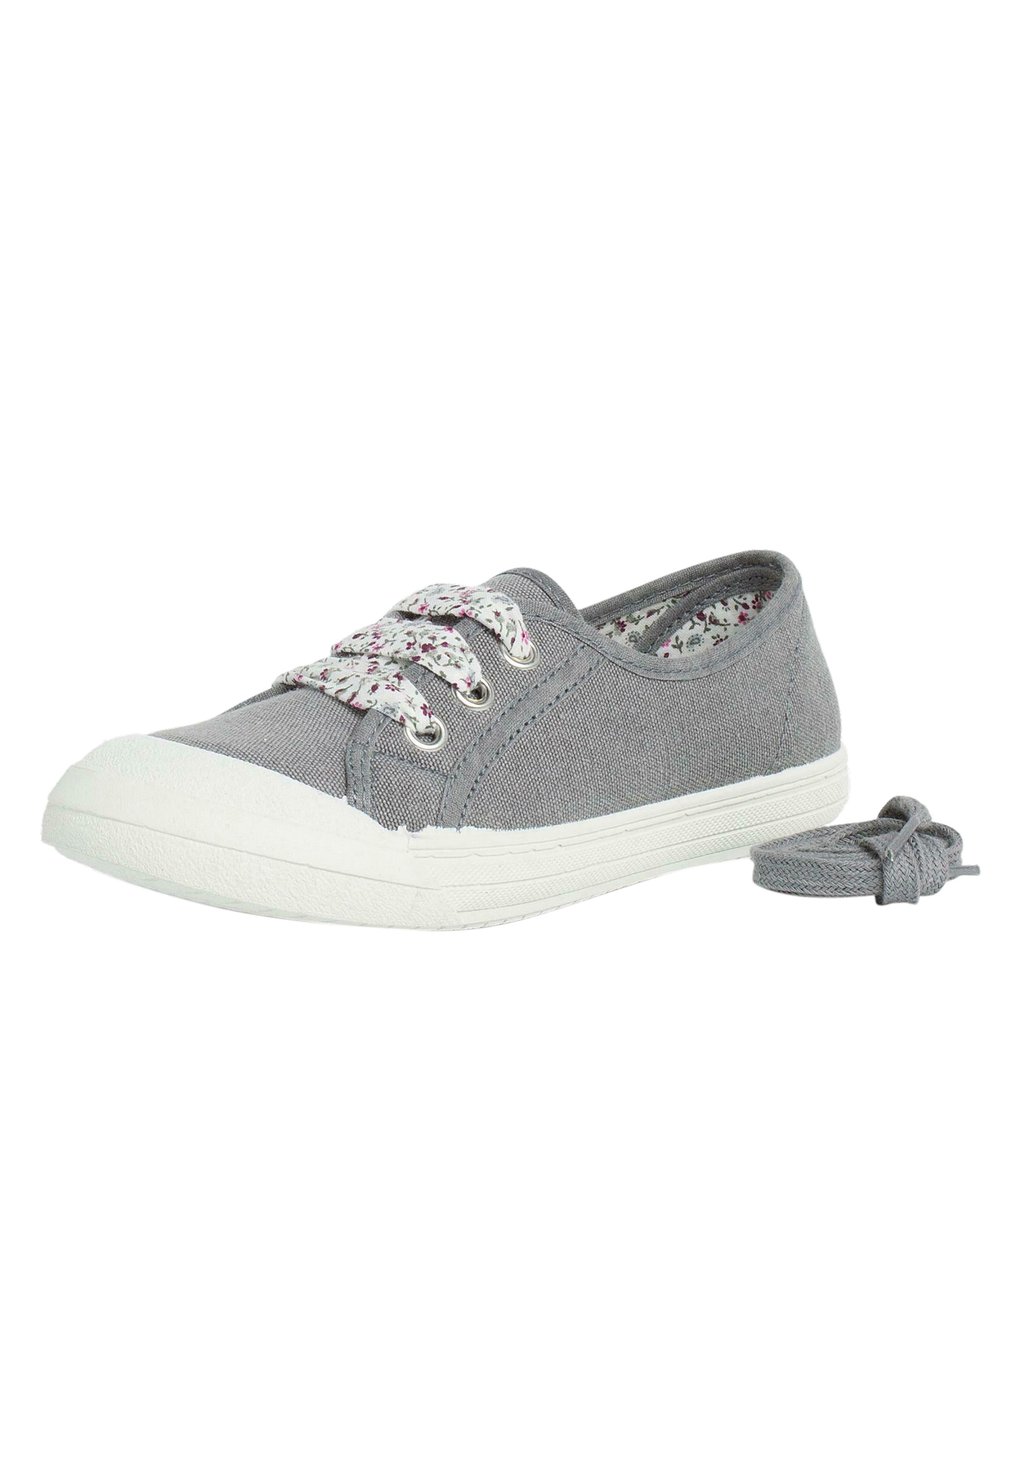 Первая обувь для ходьбы Pisamonas, цвет gris первая обувь для ходьбы bata цвет bianco